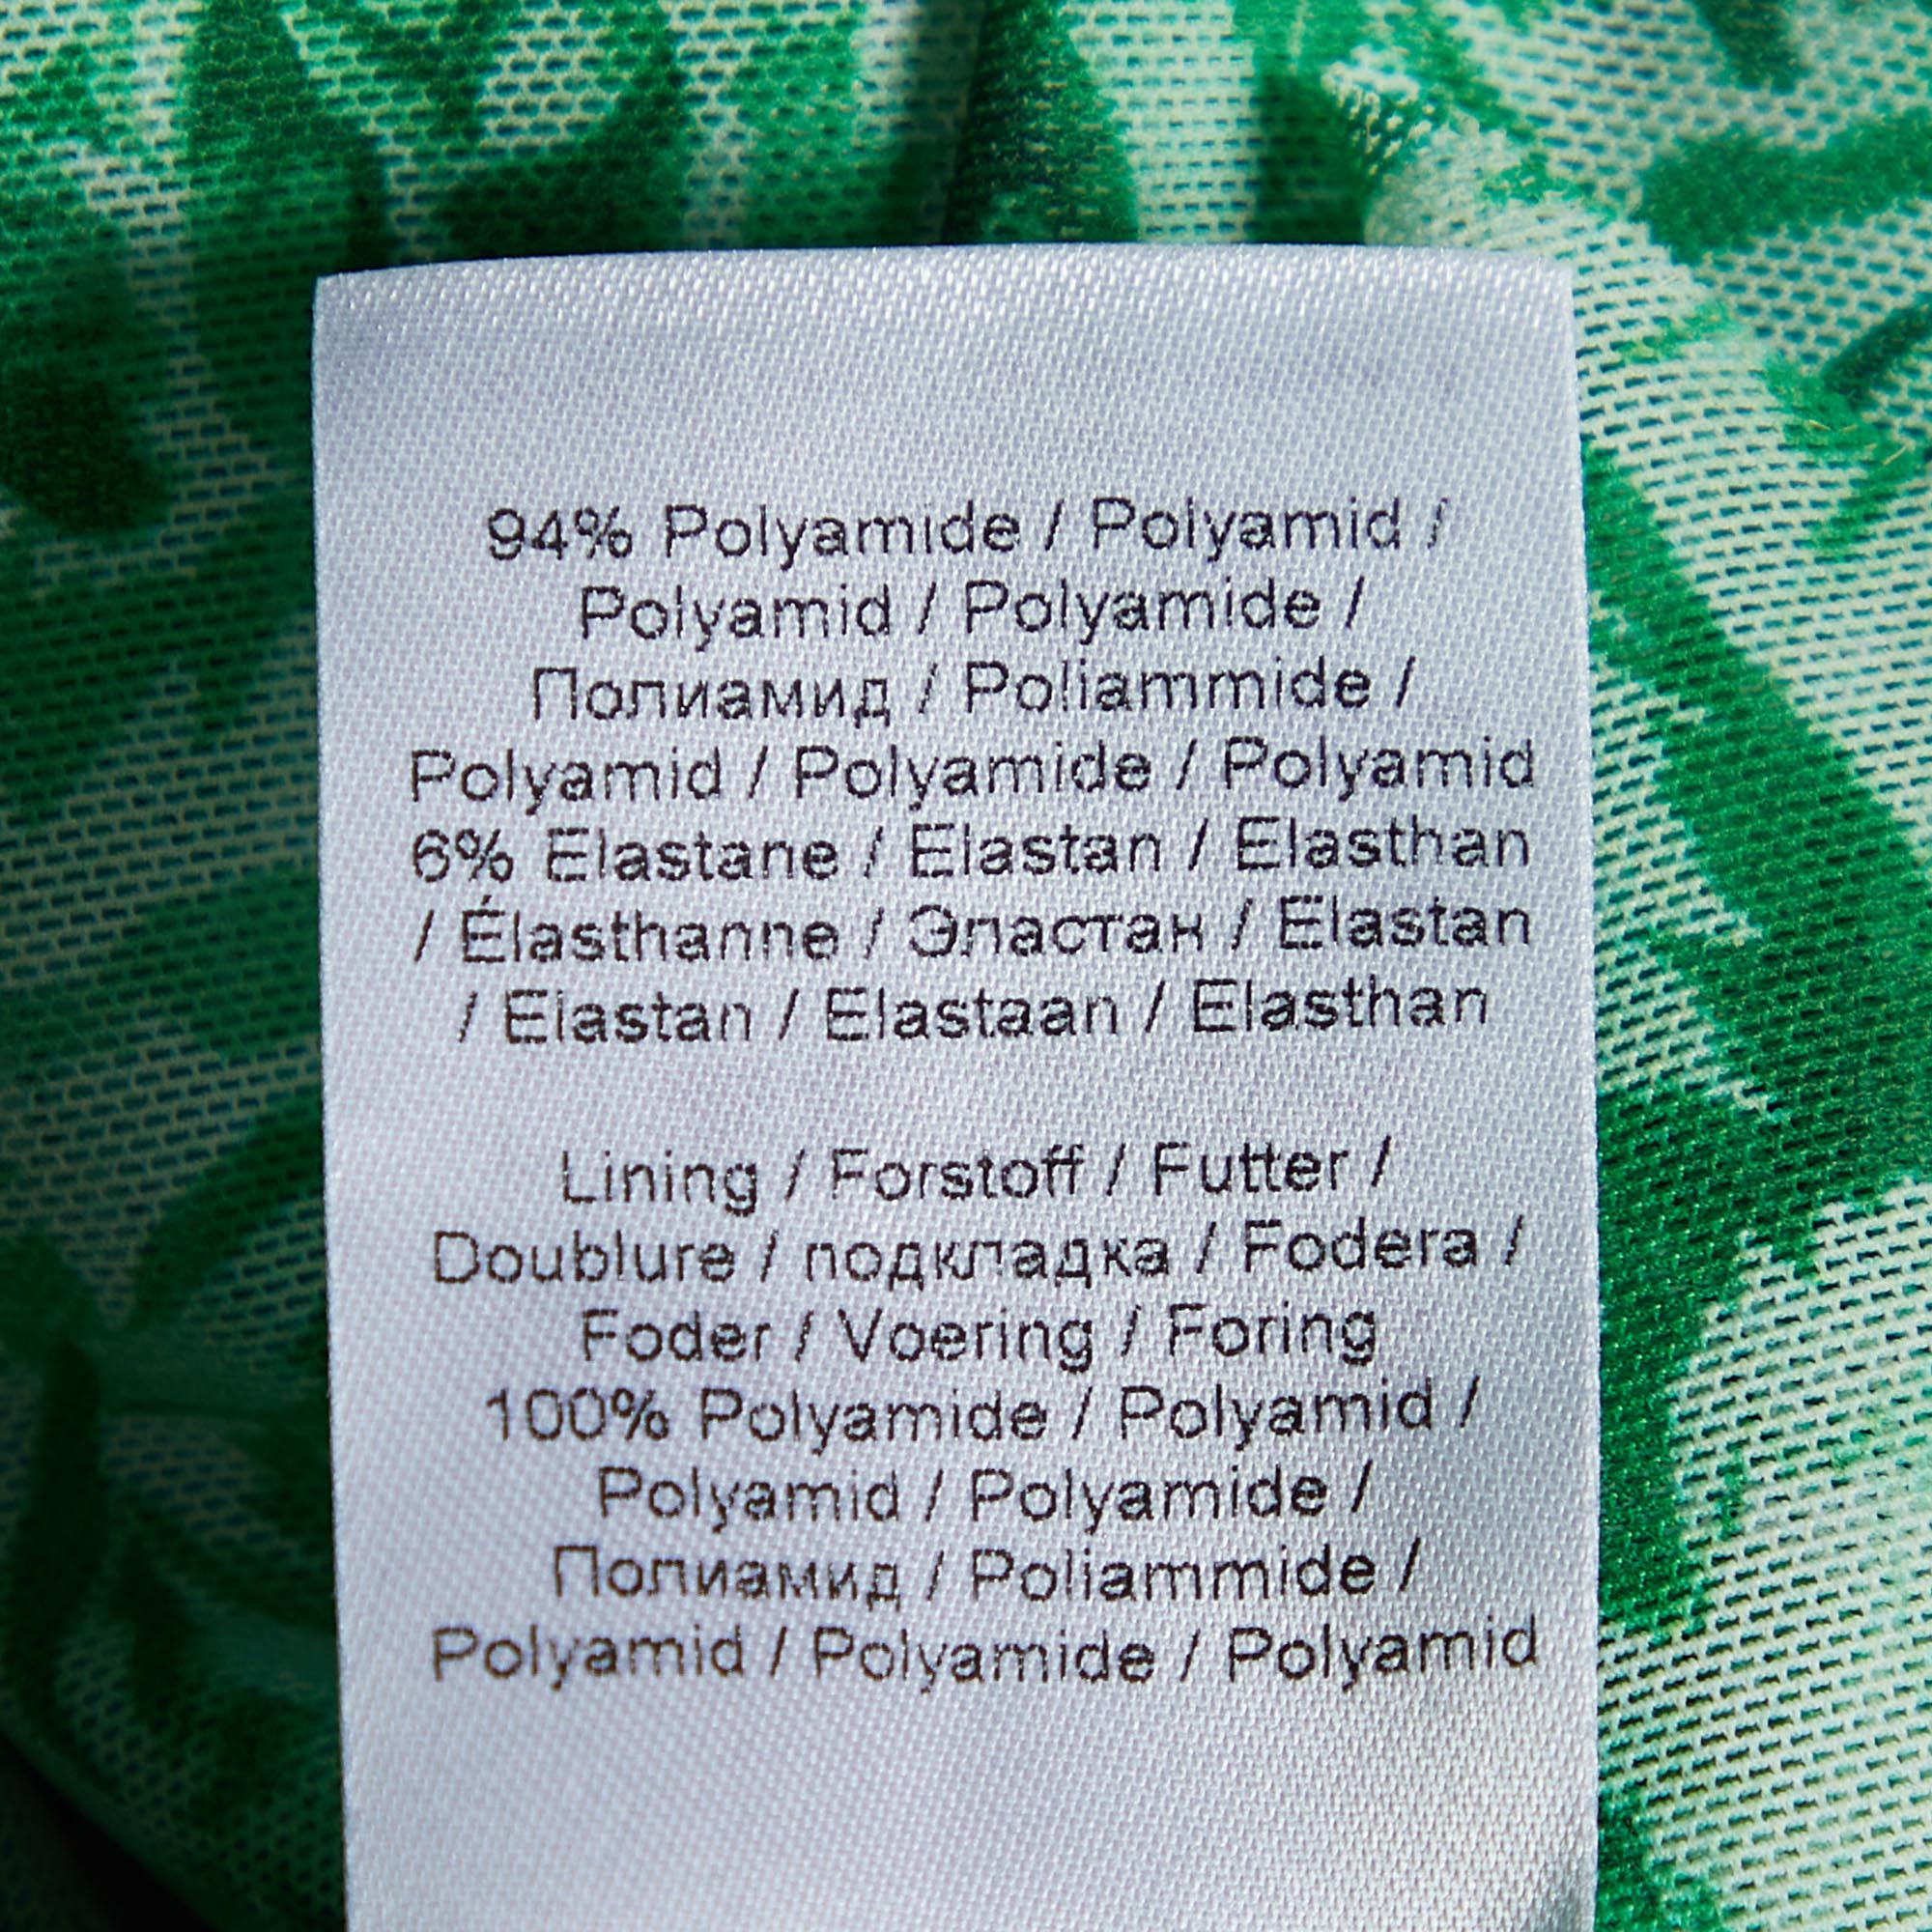 Ganni Green Floral Print Stretch Knit Wrap Midi Dress S